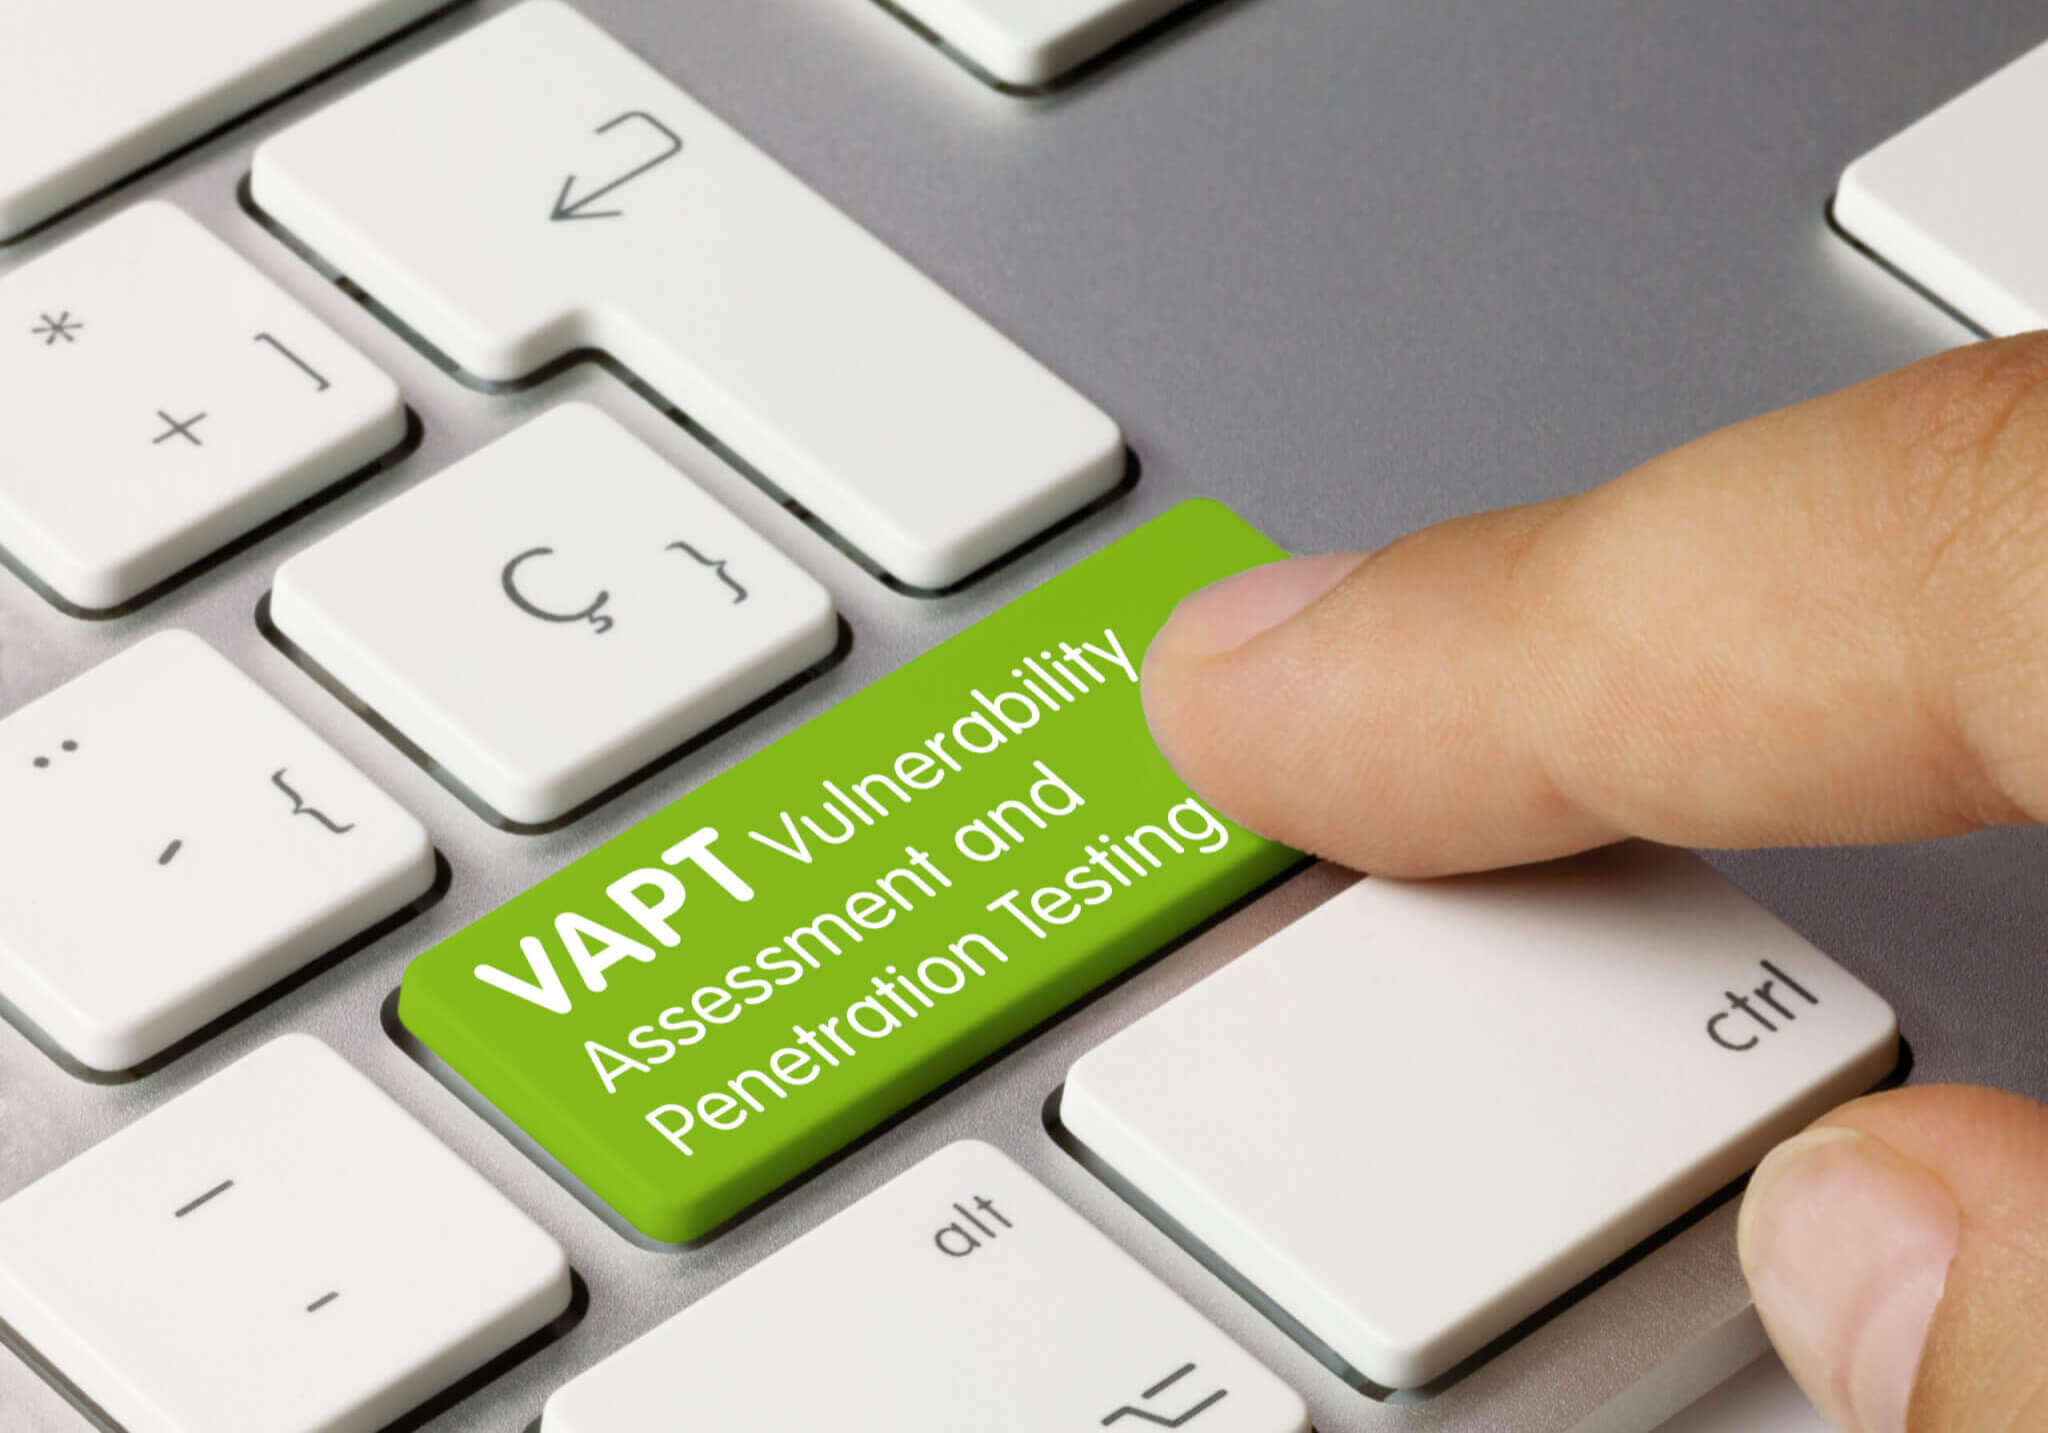 VAPT Vulnerability Assessment and Penetration Testing Written on Green Key of Metallic Keyboard. Finger pressing key.